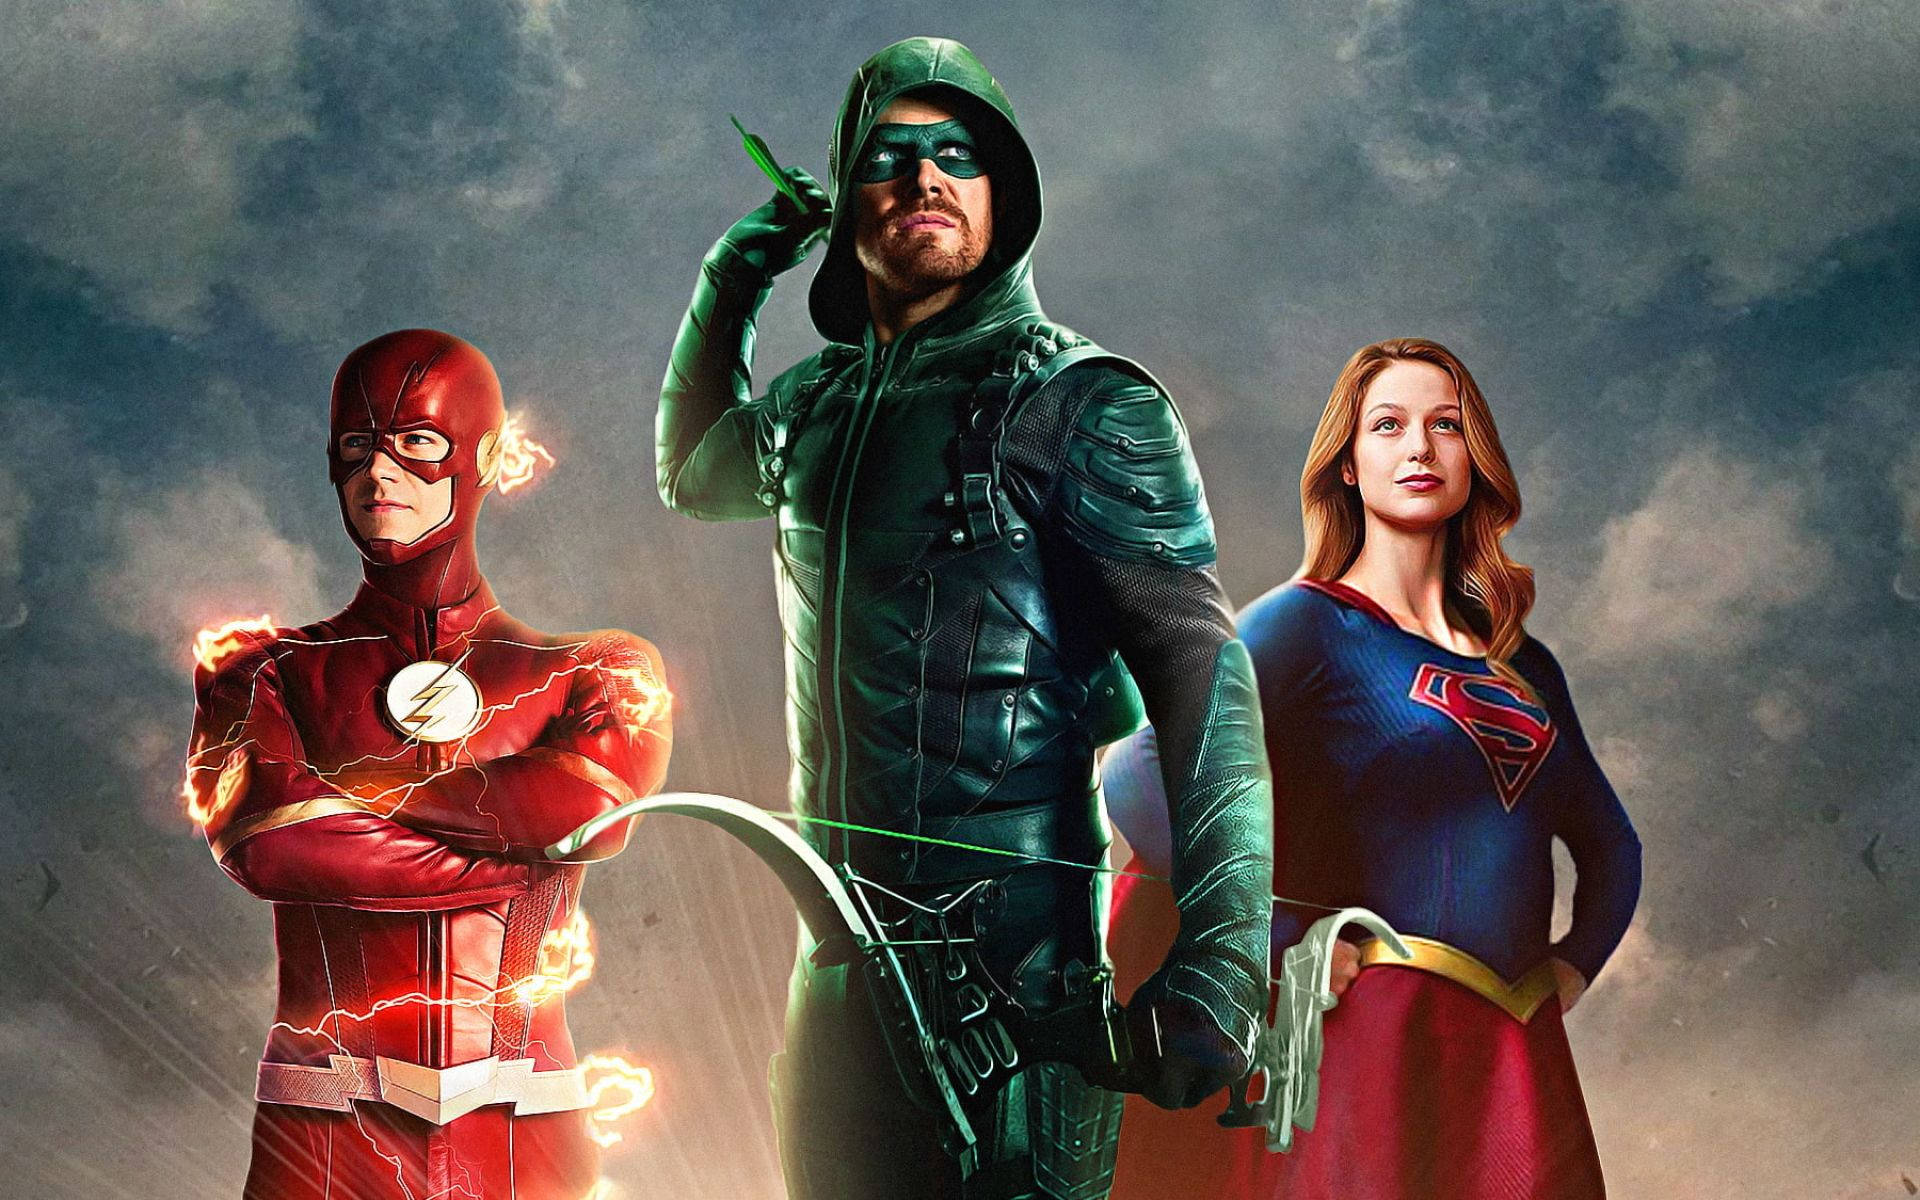 Superwomanmed Flash Och Green Arrow. Wallpaper